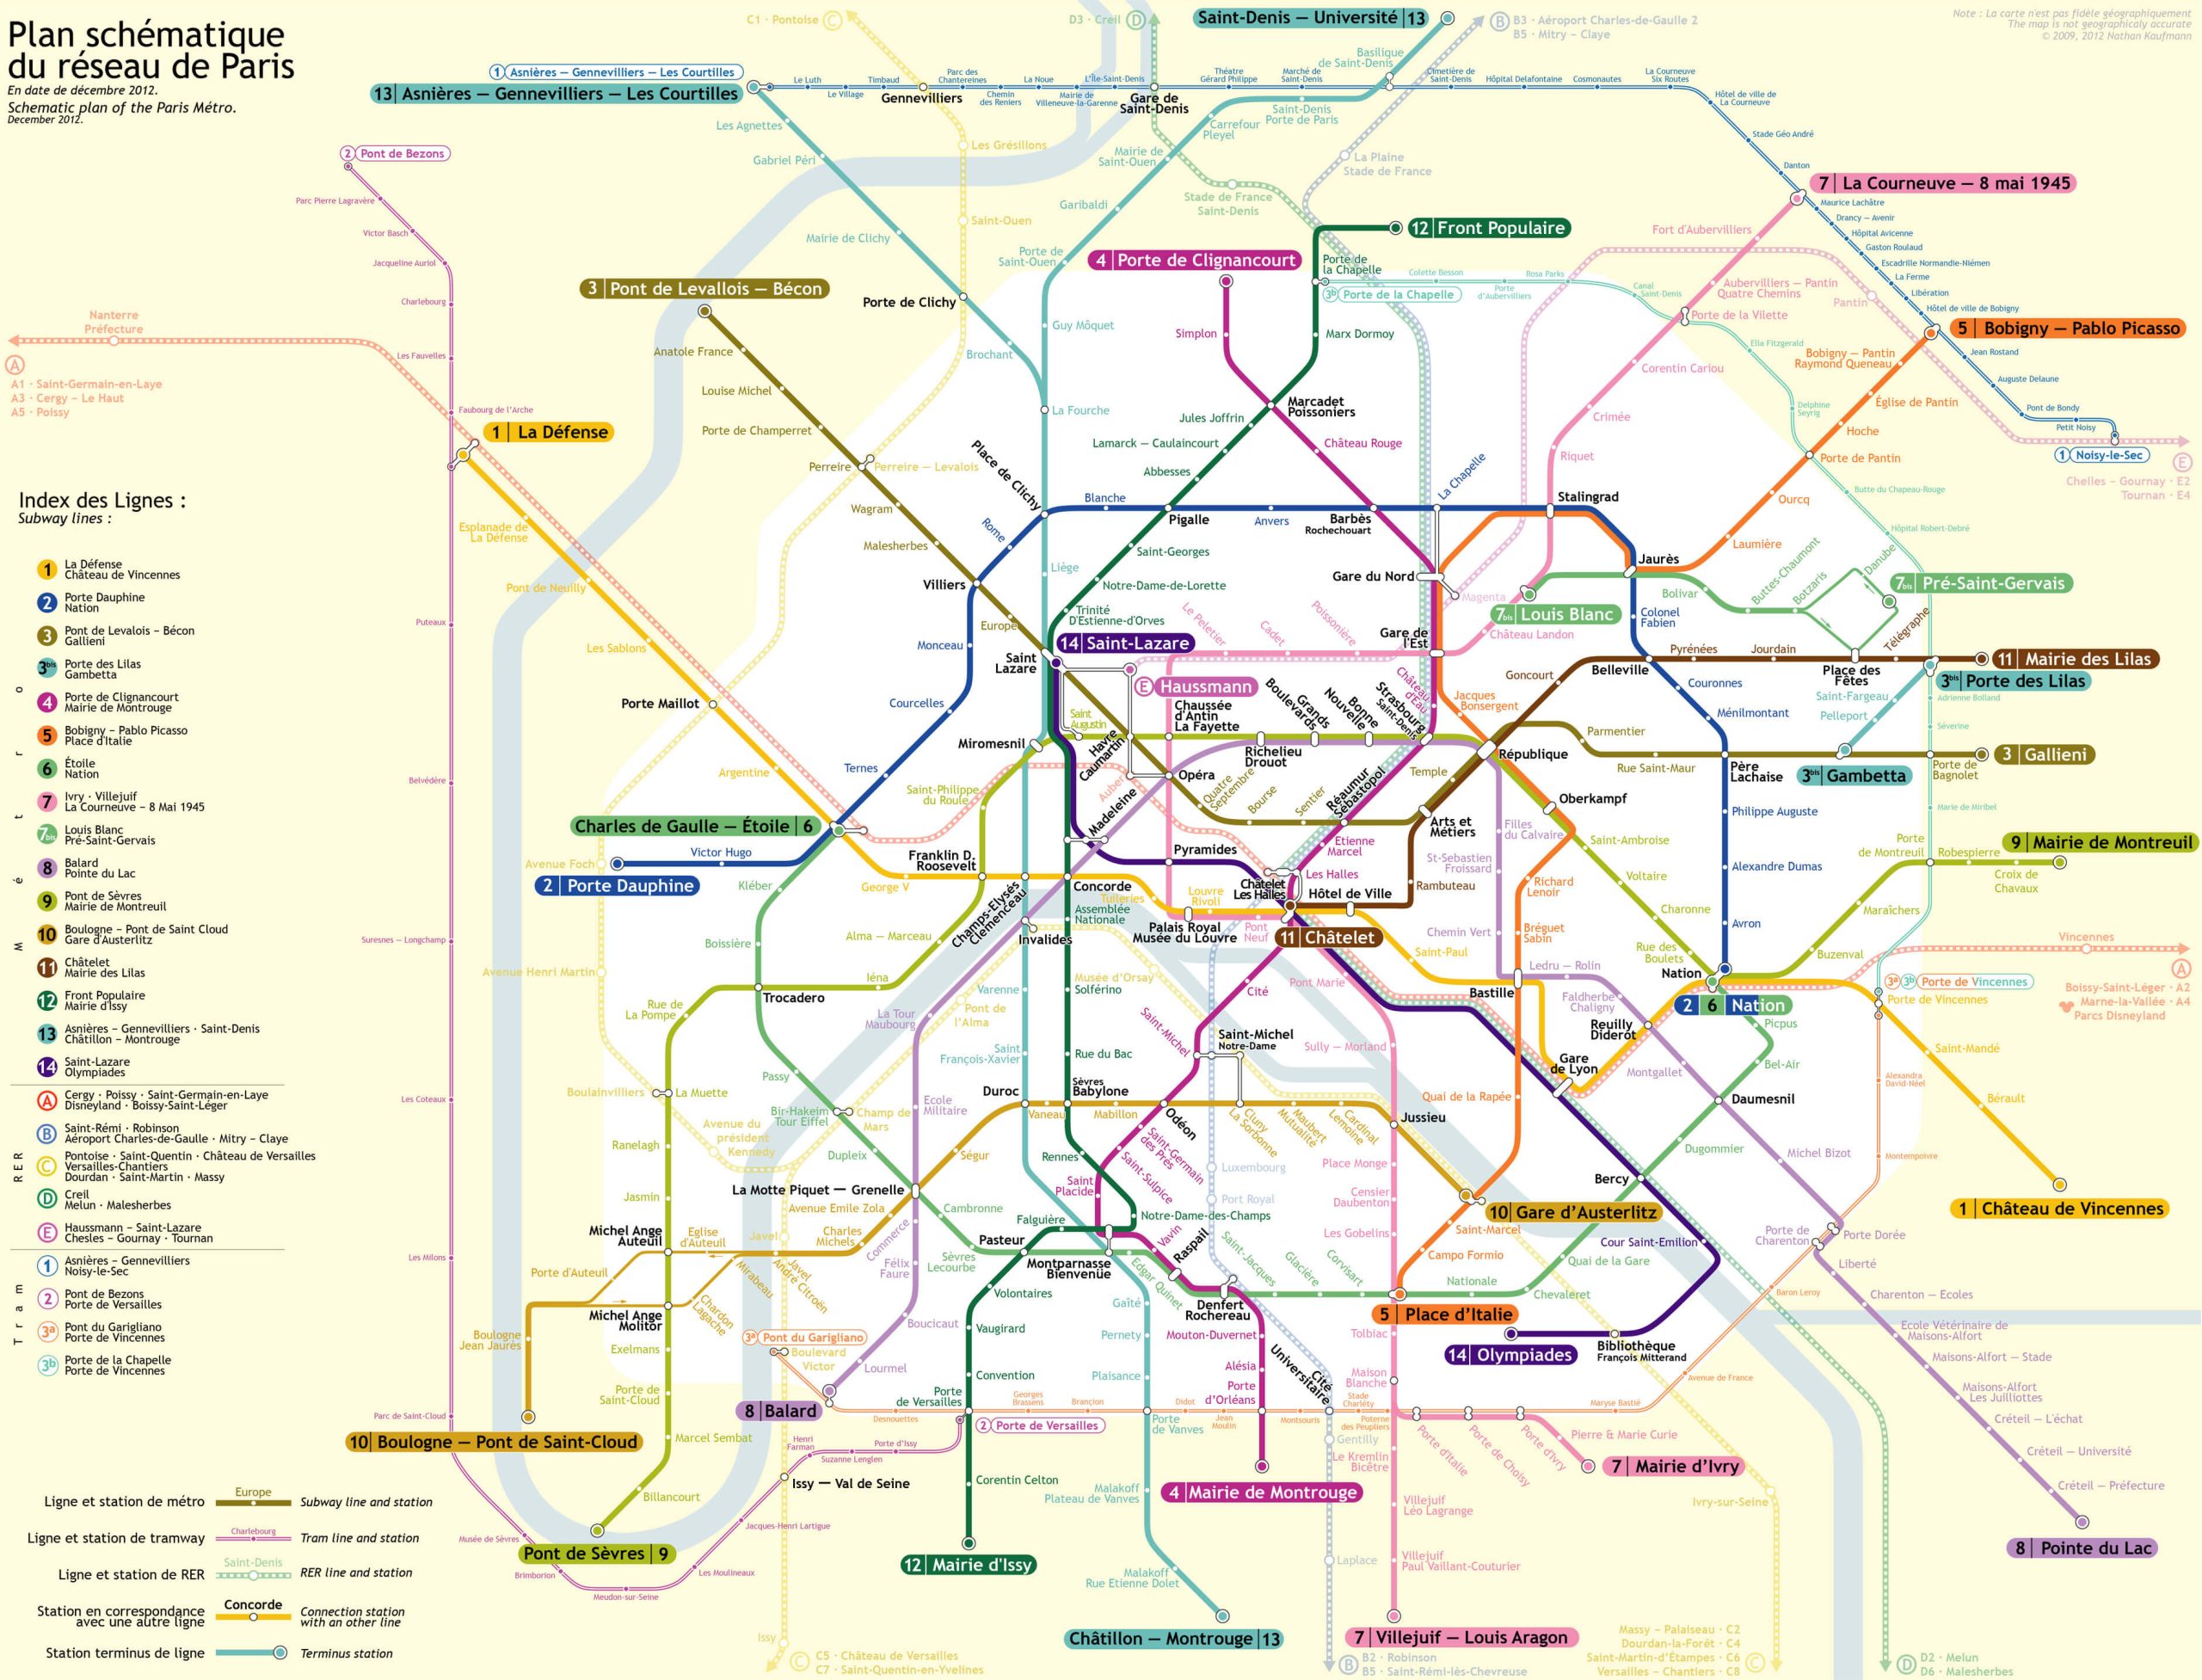 map of paris metro